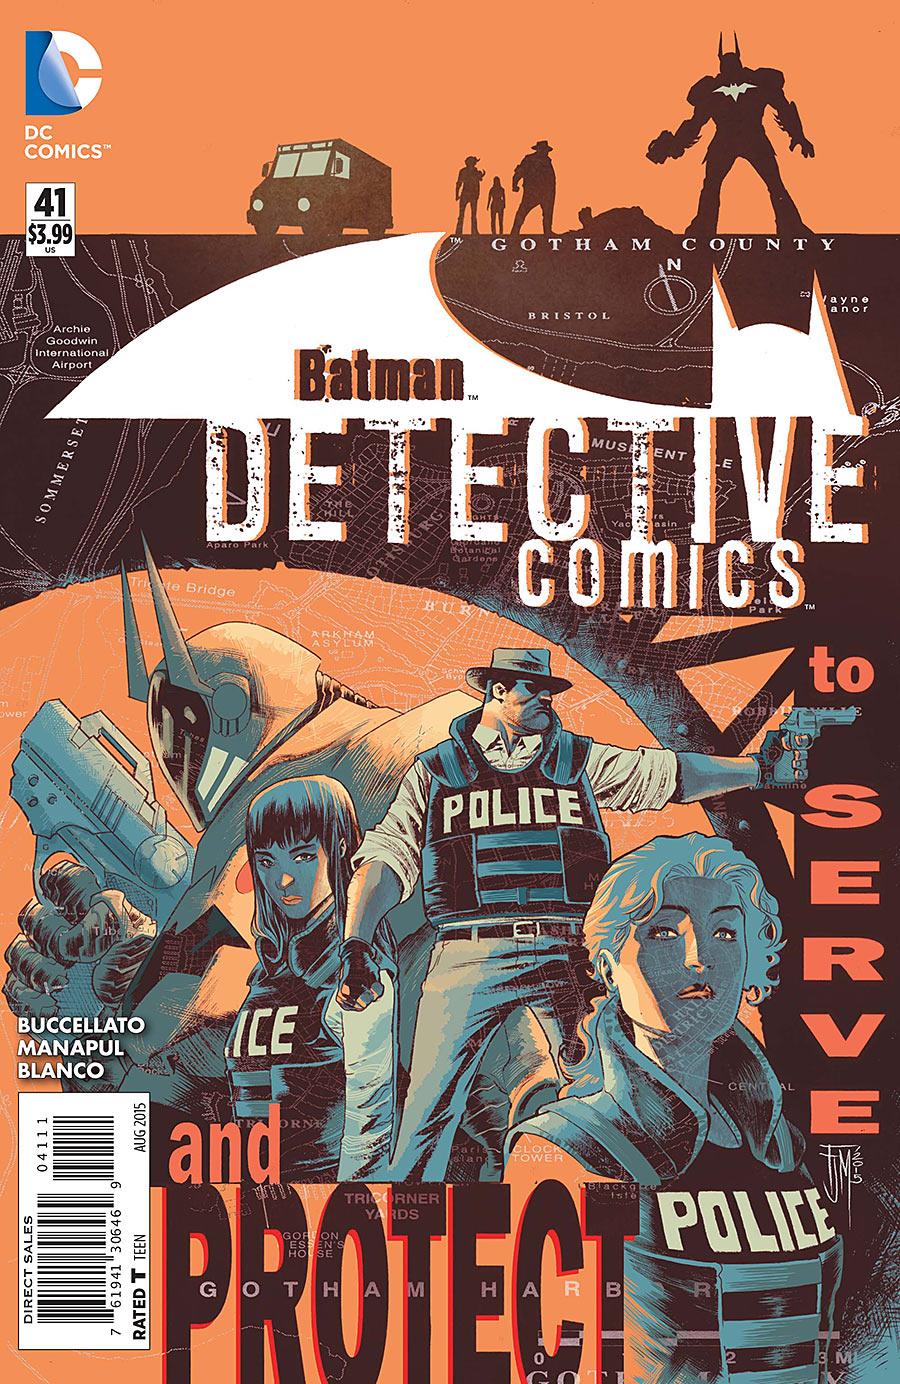 Detective Comics Vol. 2 #41